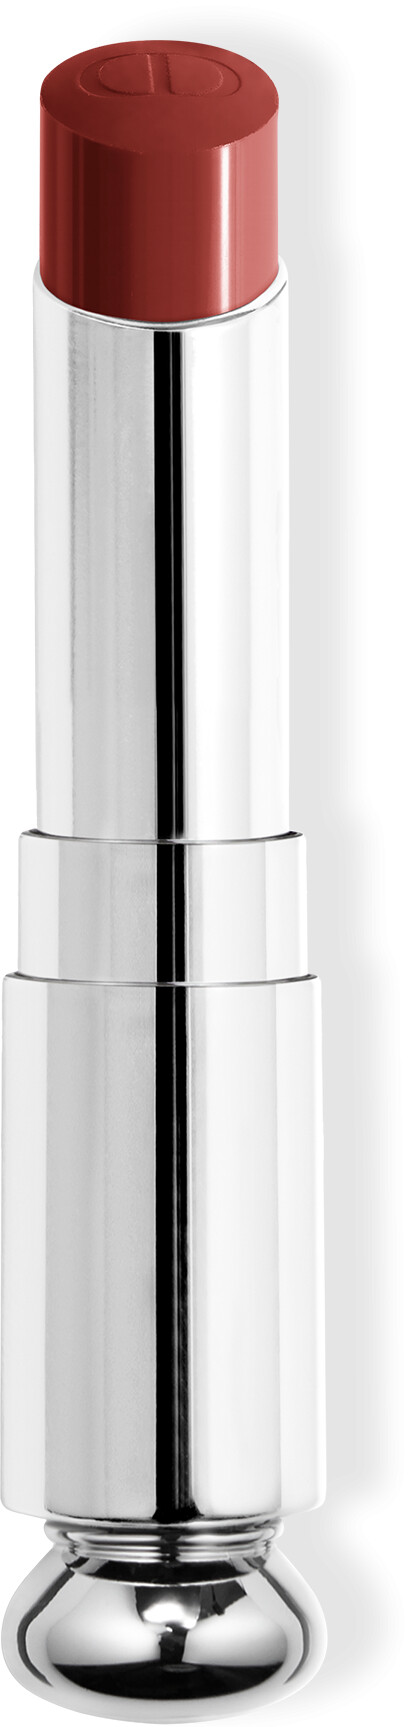 DIOR Addict Shine Lipstick Refill 3.2g 720 - Icone